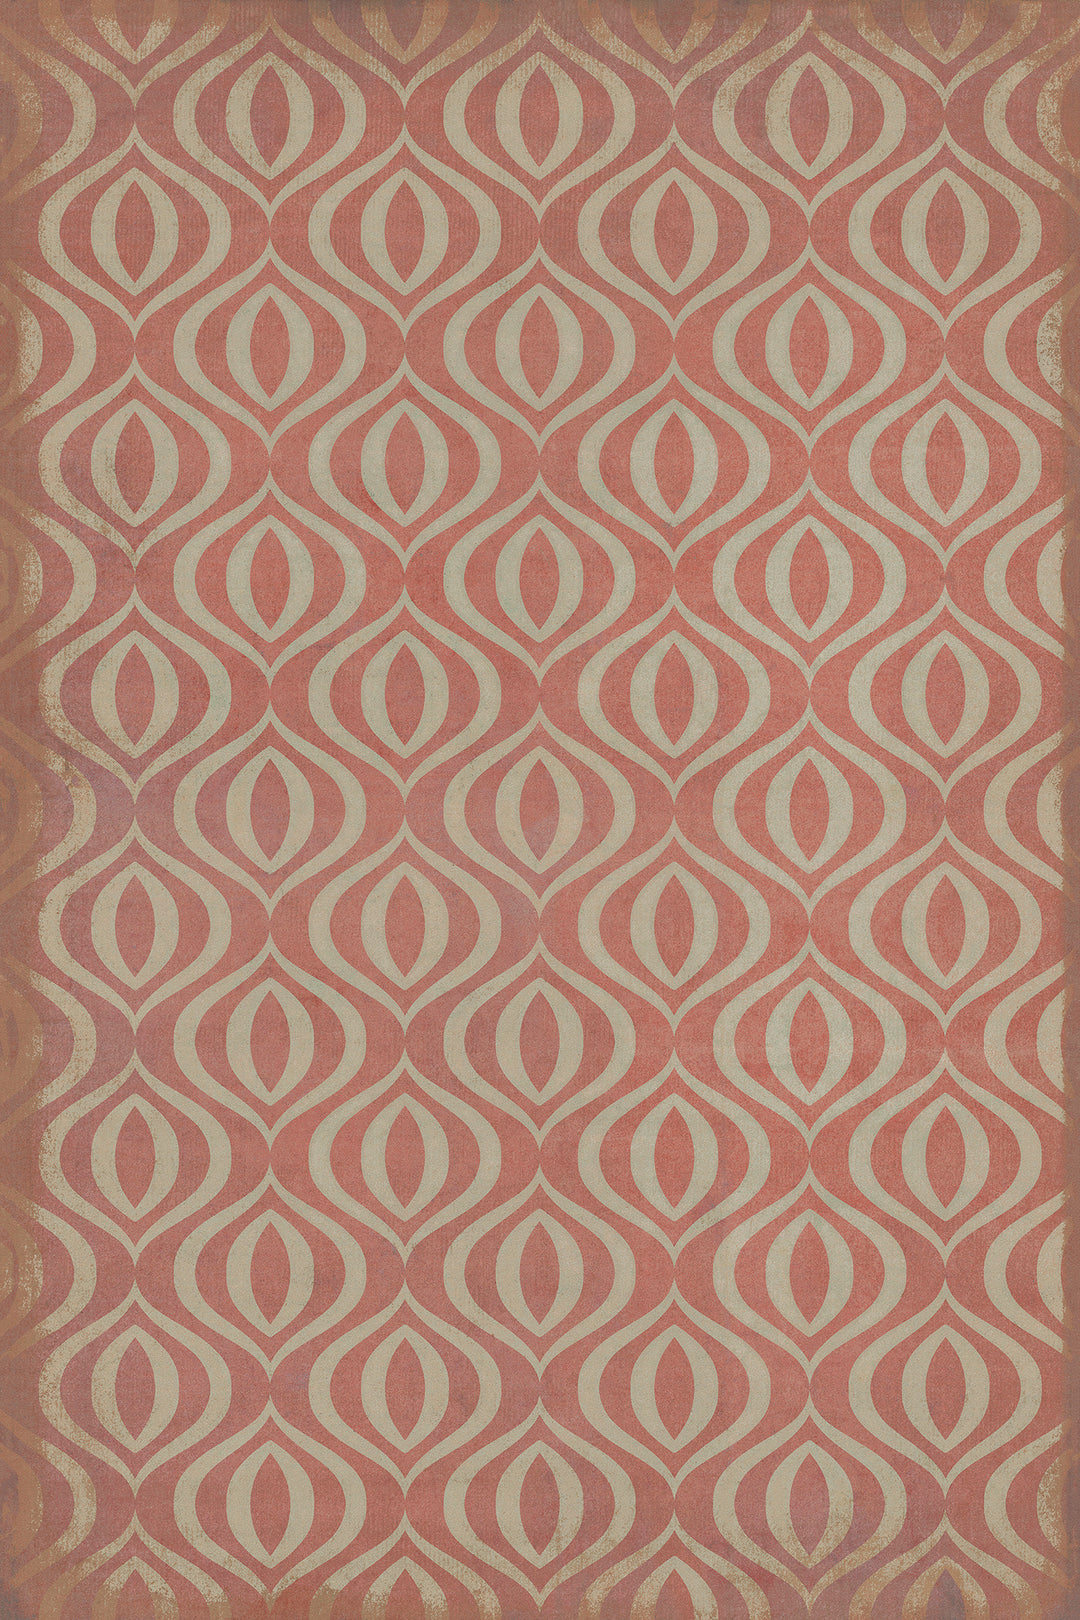 Vintage Vinyl Floorcloth Rug (Classic Pattern 15 Genie)